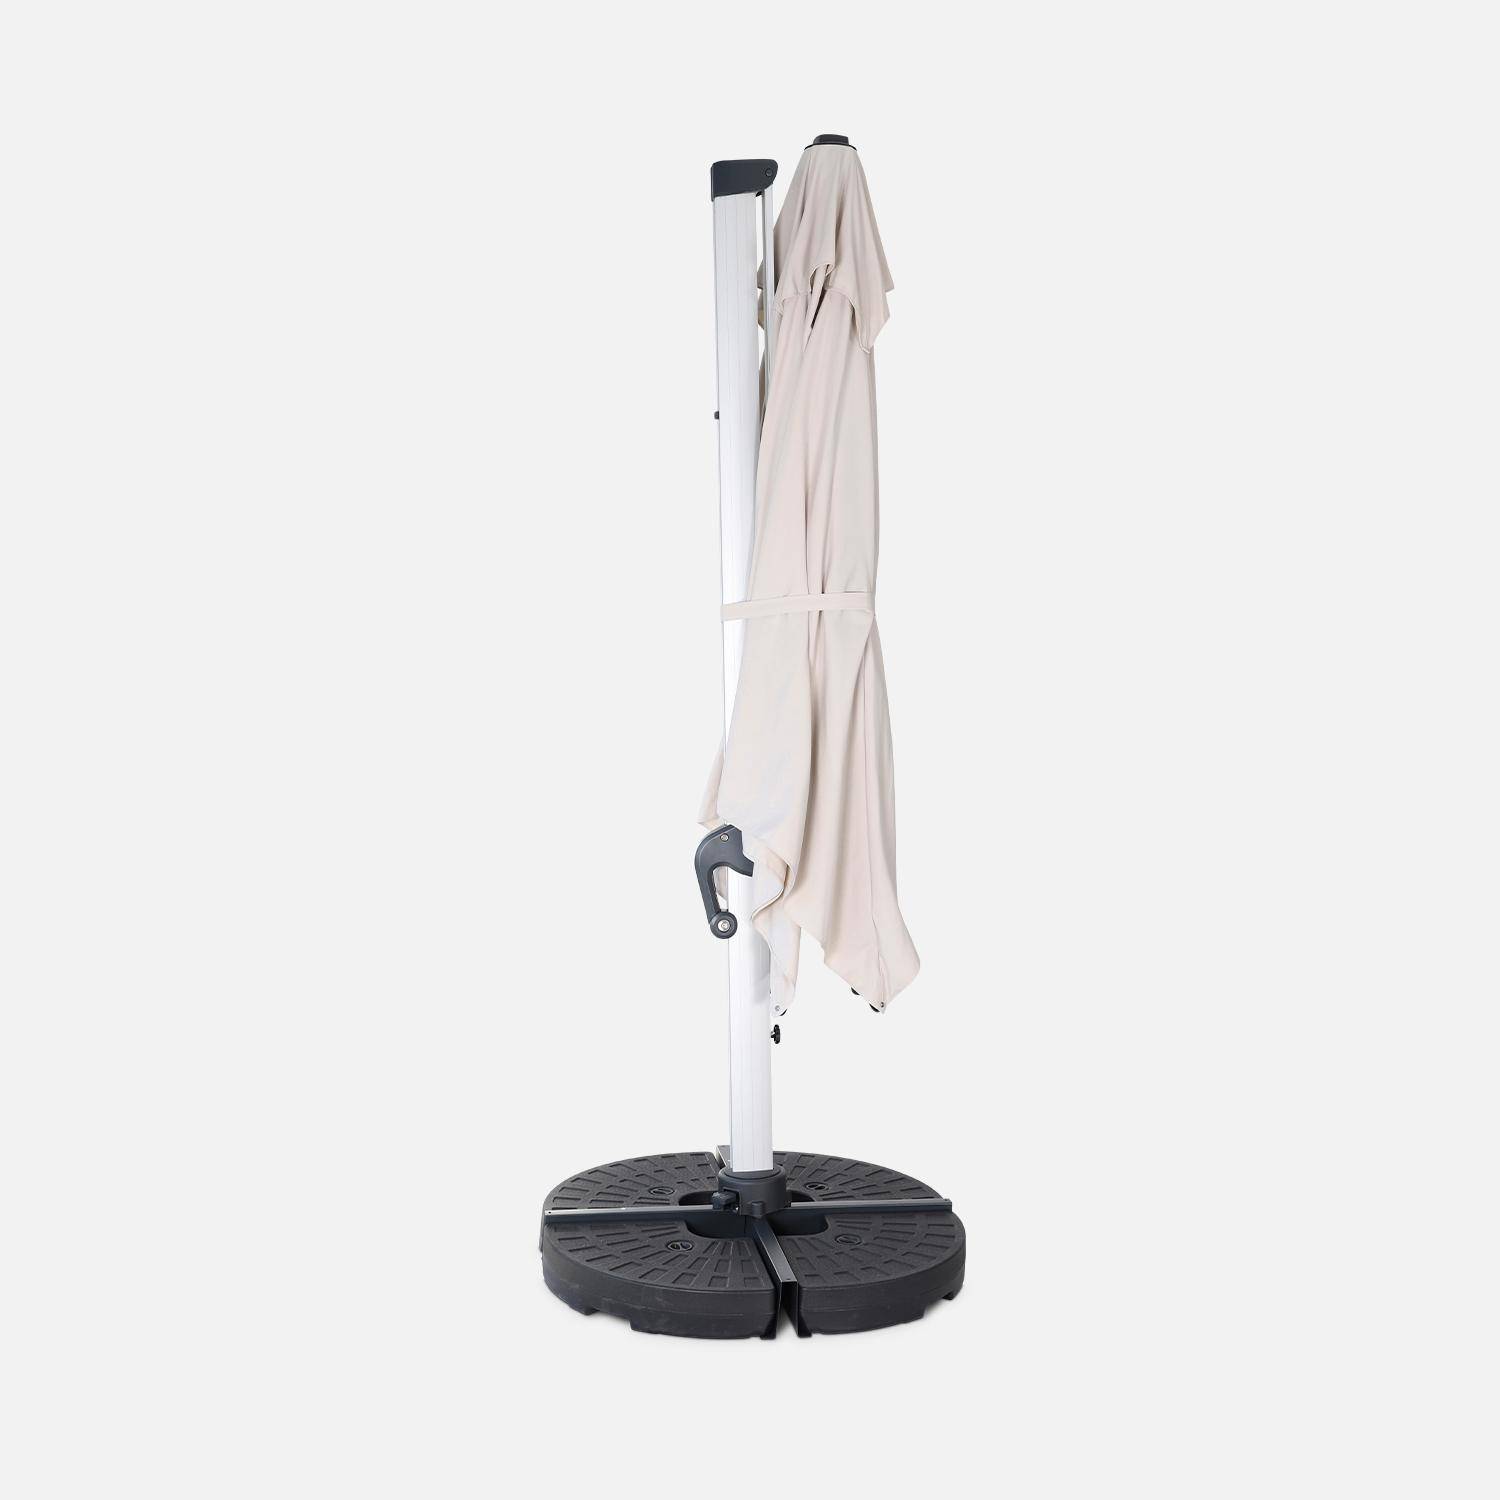 Topkwaliteit parasol, 3x3m, beige polyester doek, geanodiseerd aluminium frame, hoes inbegrepen,sweeek,Photo4